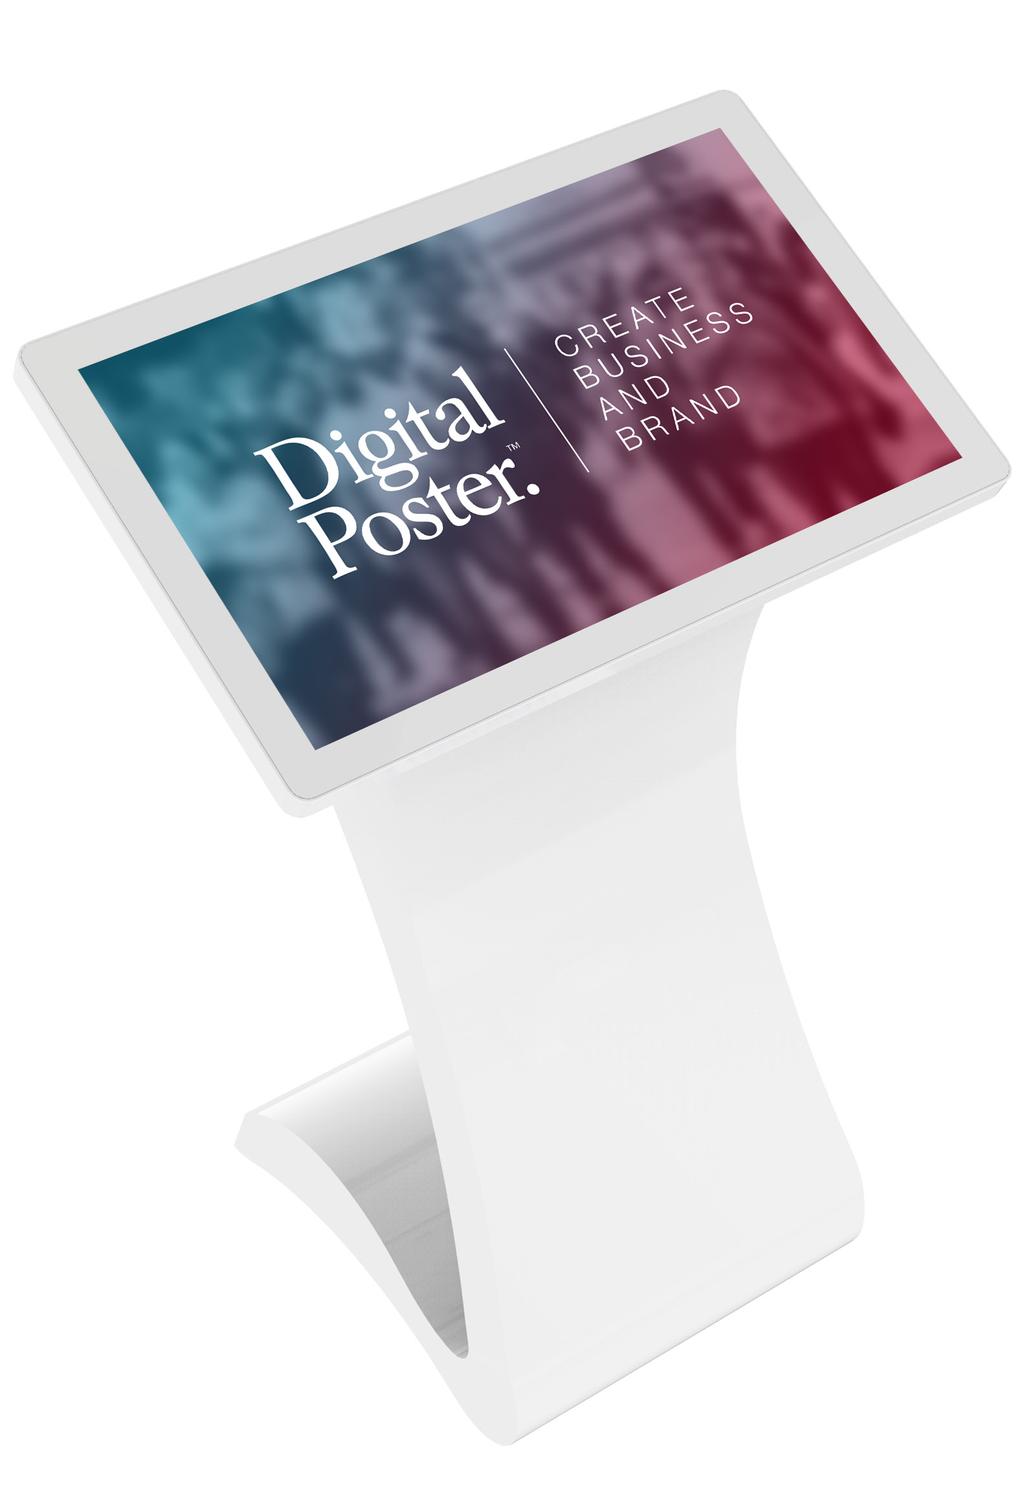 Digital Signage Surface stand Digitalisera mötesplatsen med en interaktiv informationsyta. Vår senaste produkt Surface stand andas nytänk och samarbete.